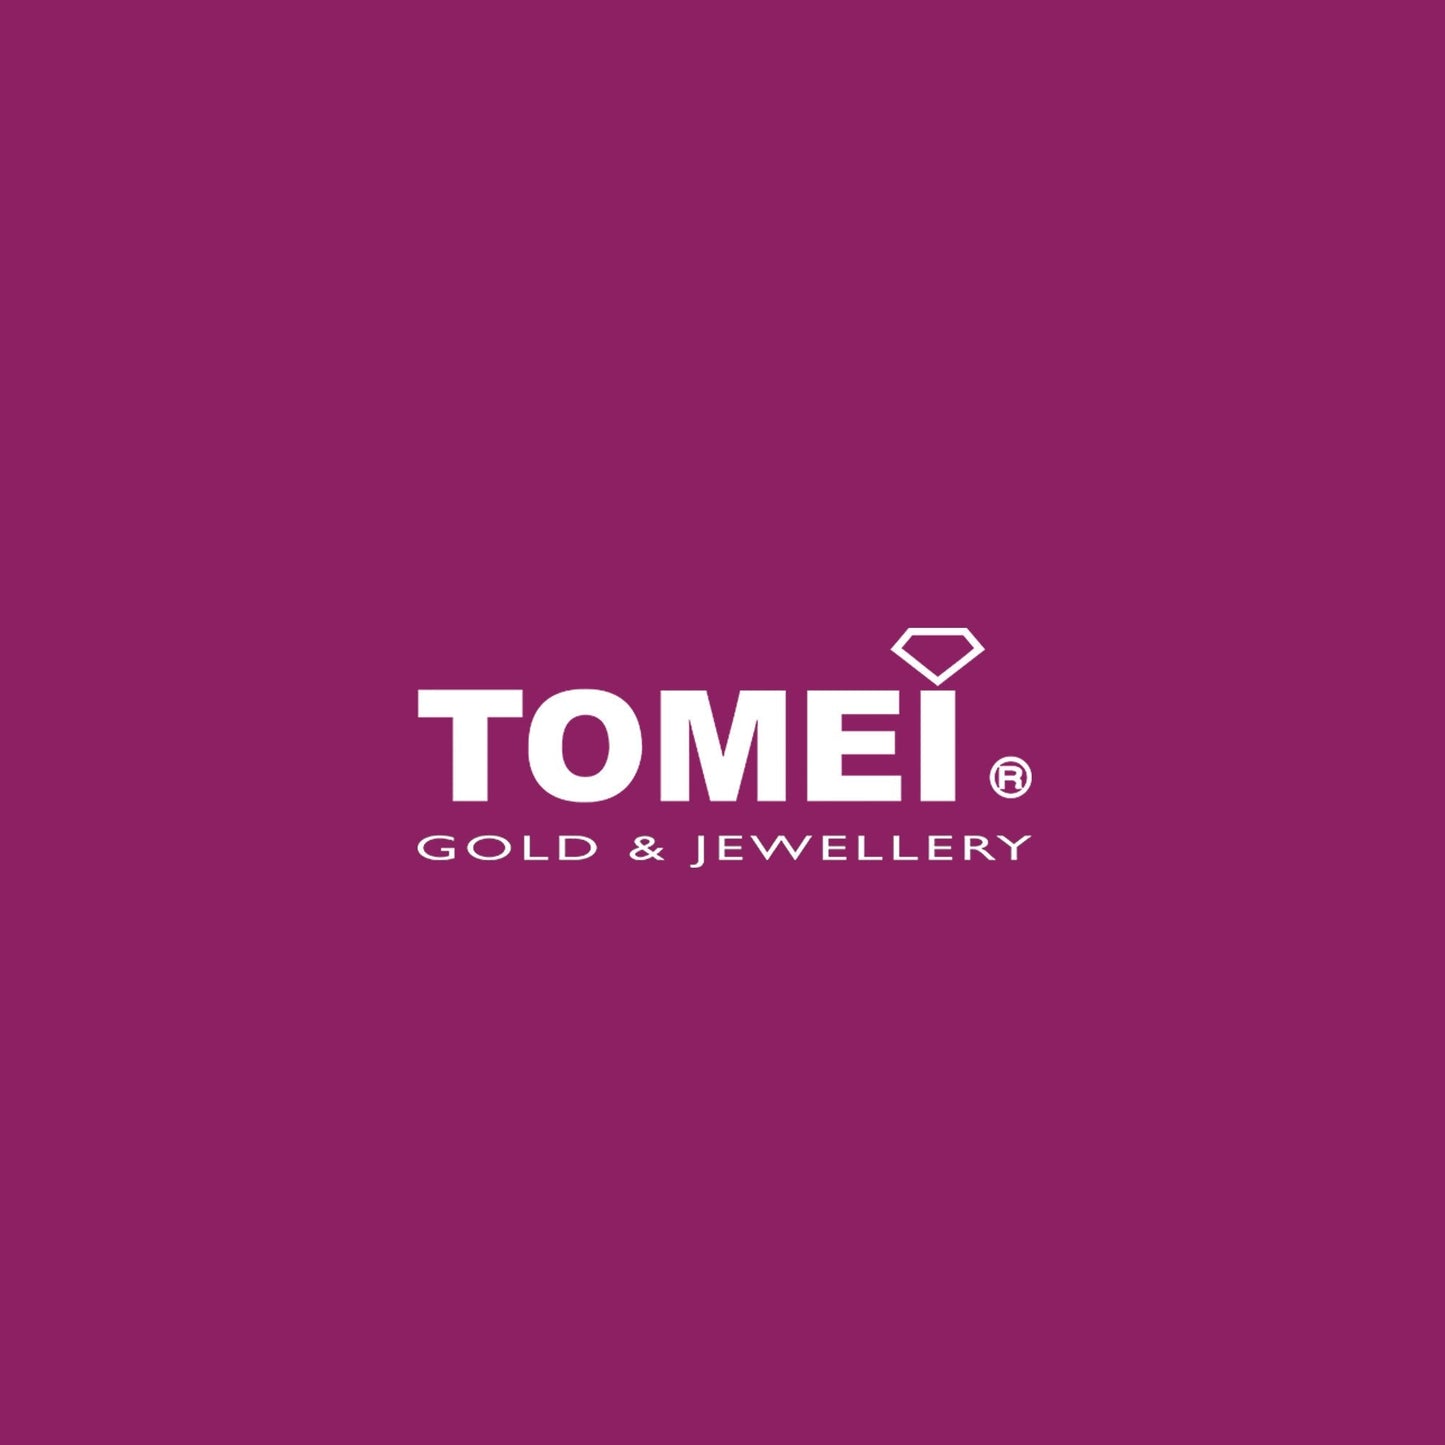 TOMEI X SANRIO My Melody Prosperity Rabbit Gold Foil 1G I Fine Gold 999.9